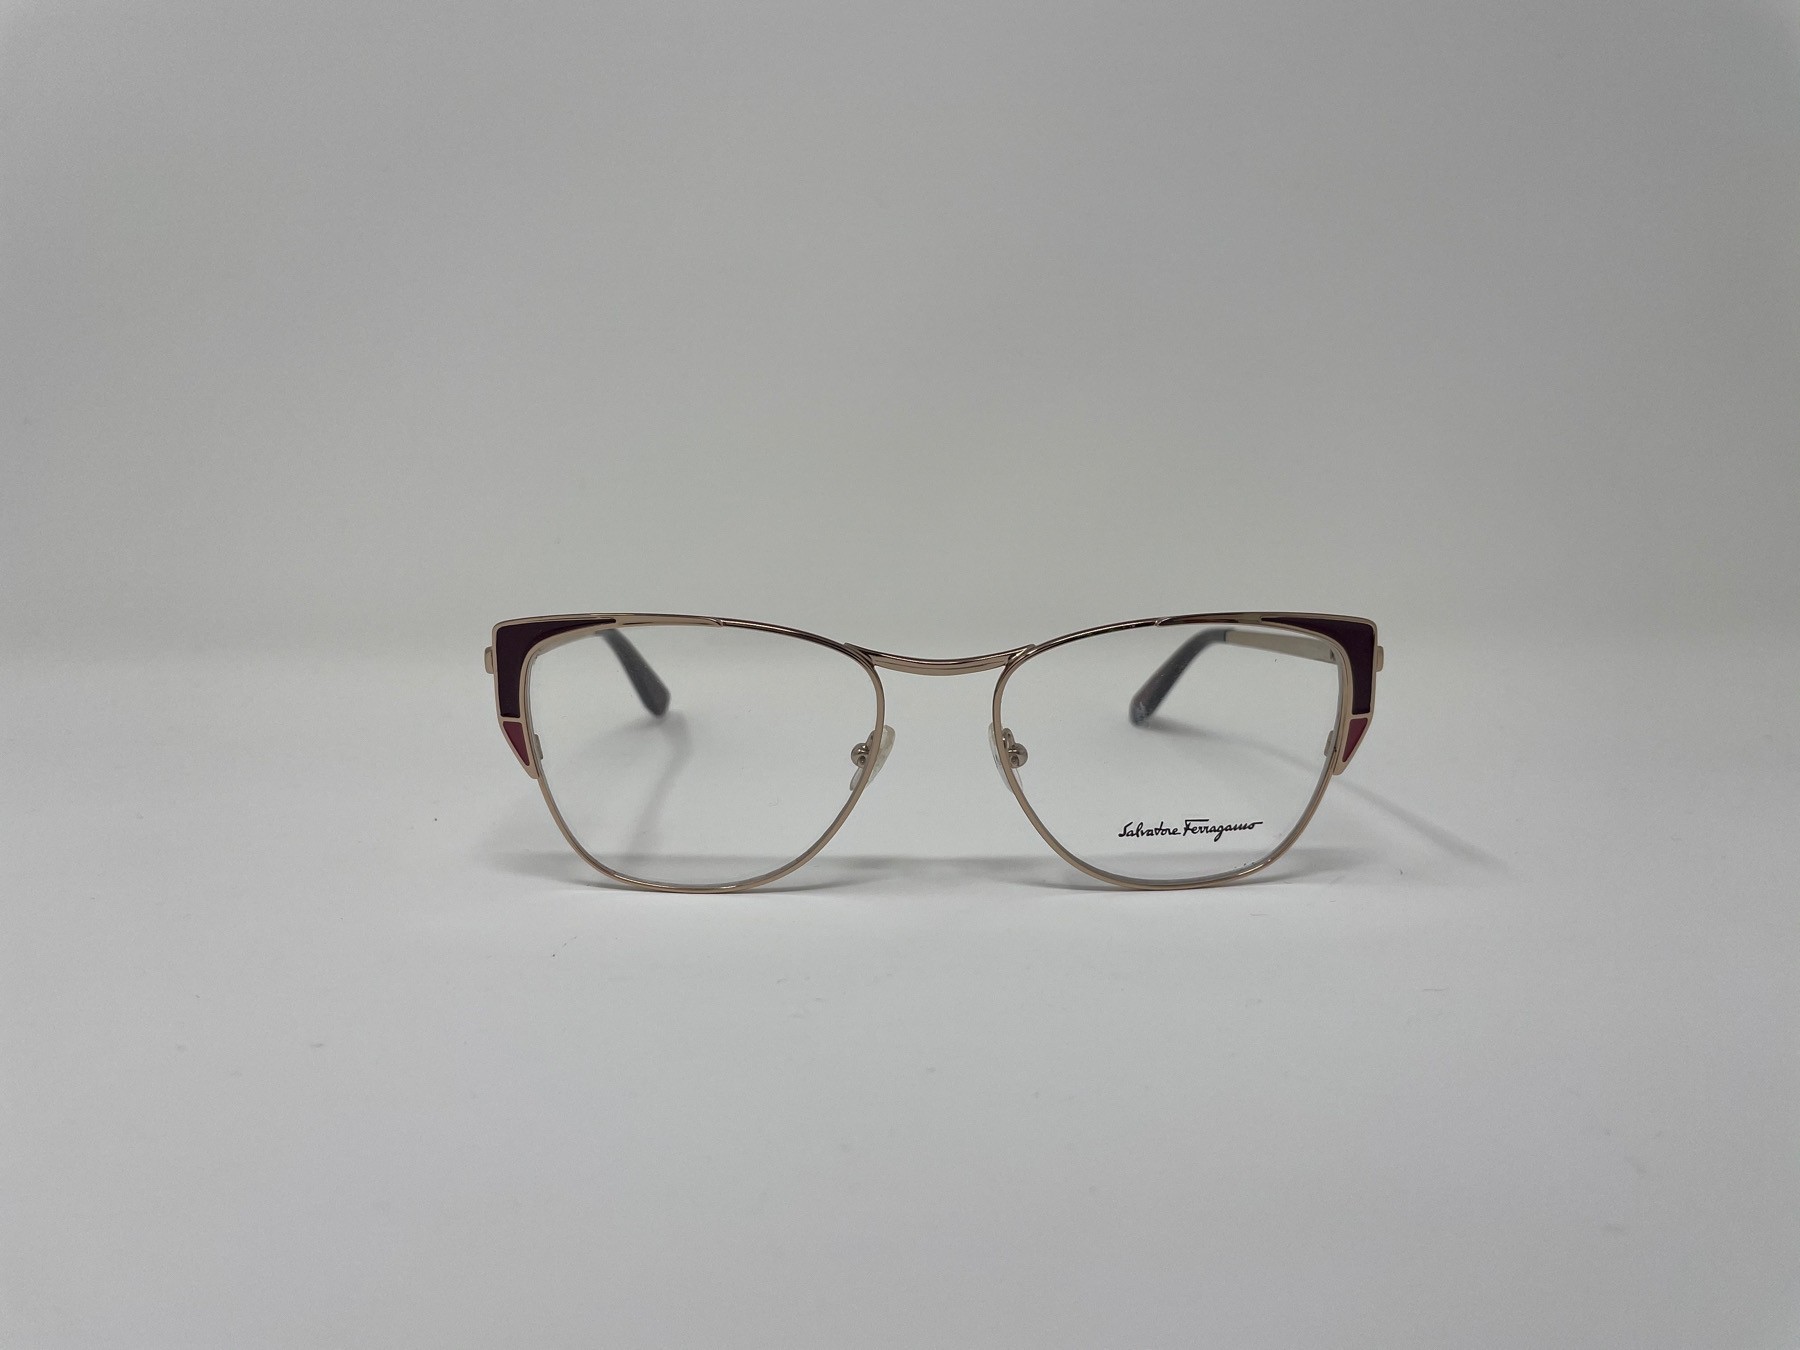 Salvatore Ferragamo SF 2163 Unisex eyeglasses